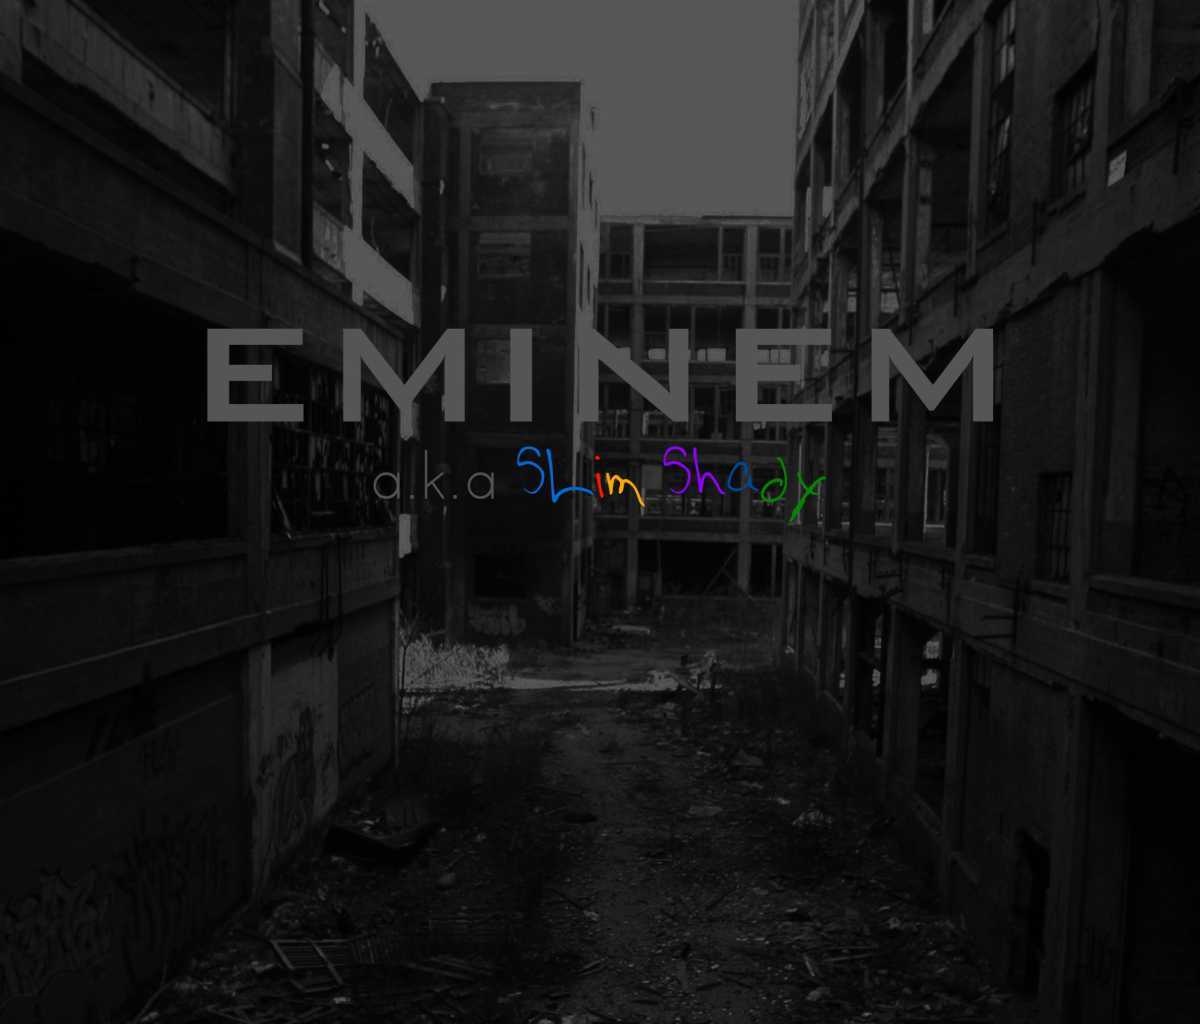 Eminem - Slim Shady wallpaper 1200x1024